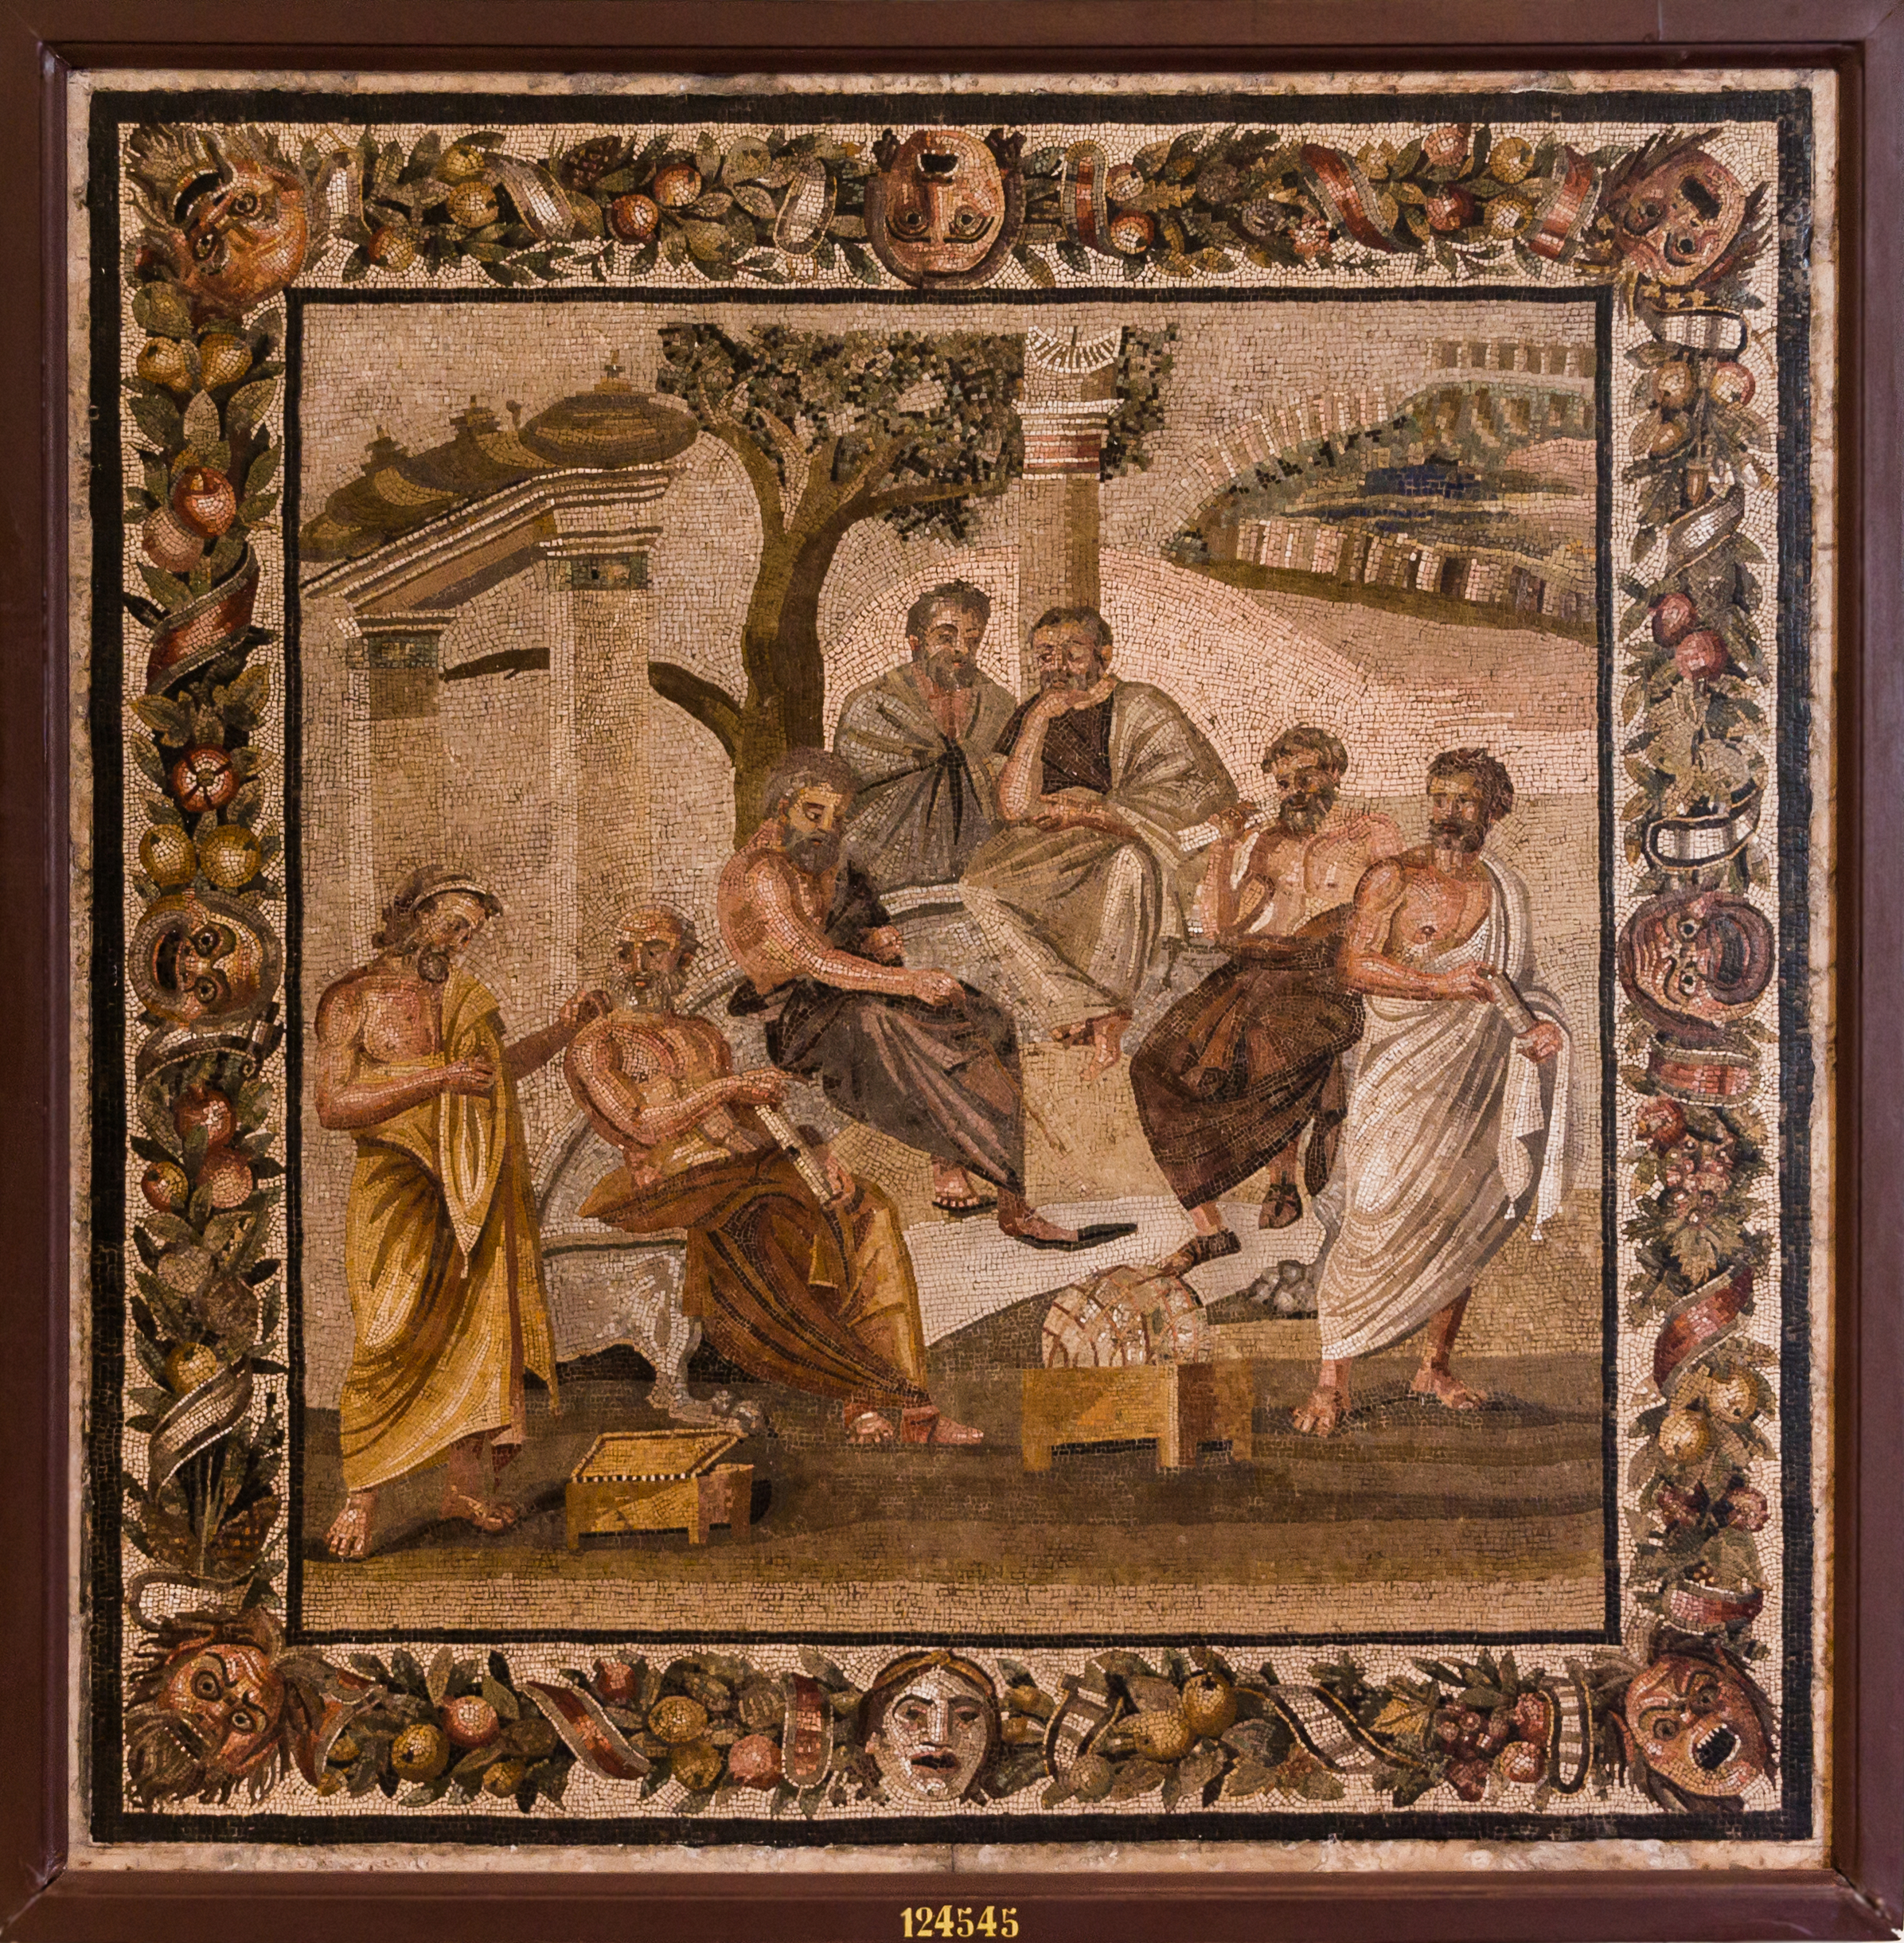 Mosaico del siglo I hallado en Pompeya que representa a la Academia de Platón - Museo Arqueológico Nacional de Nápoles